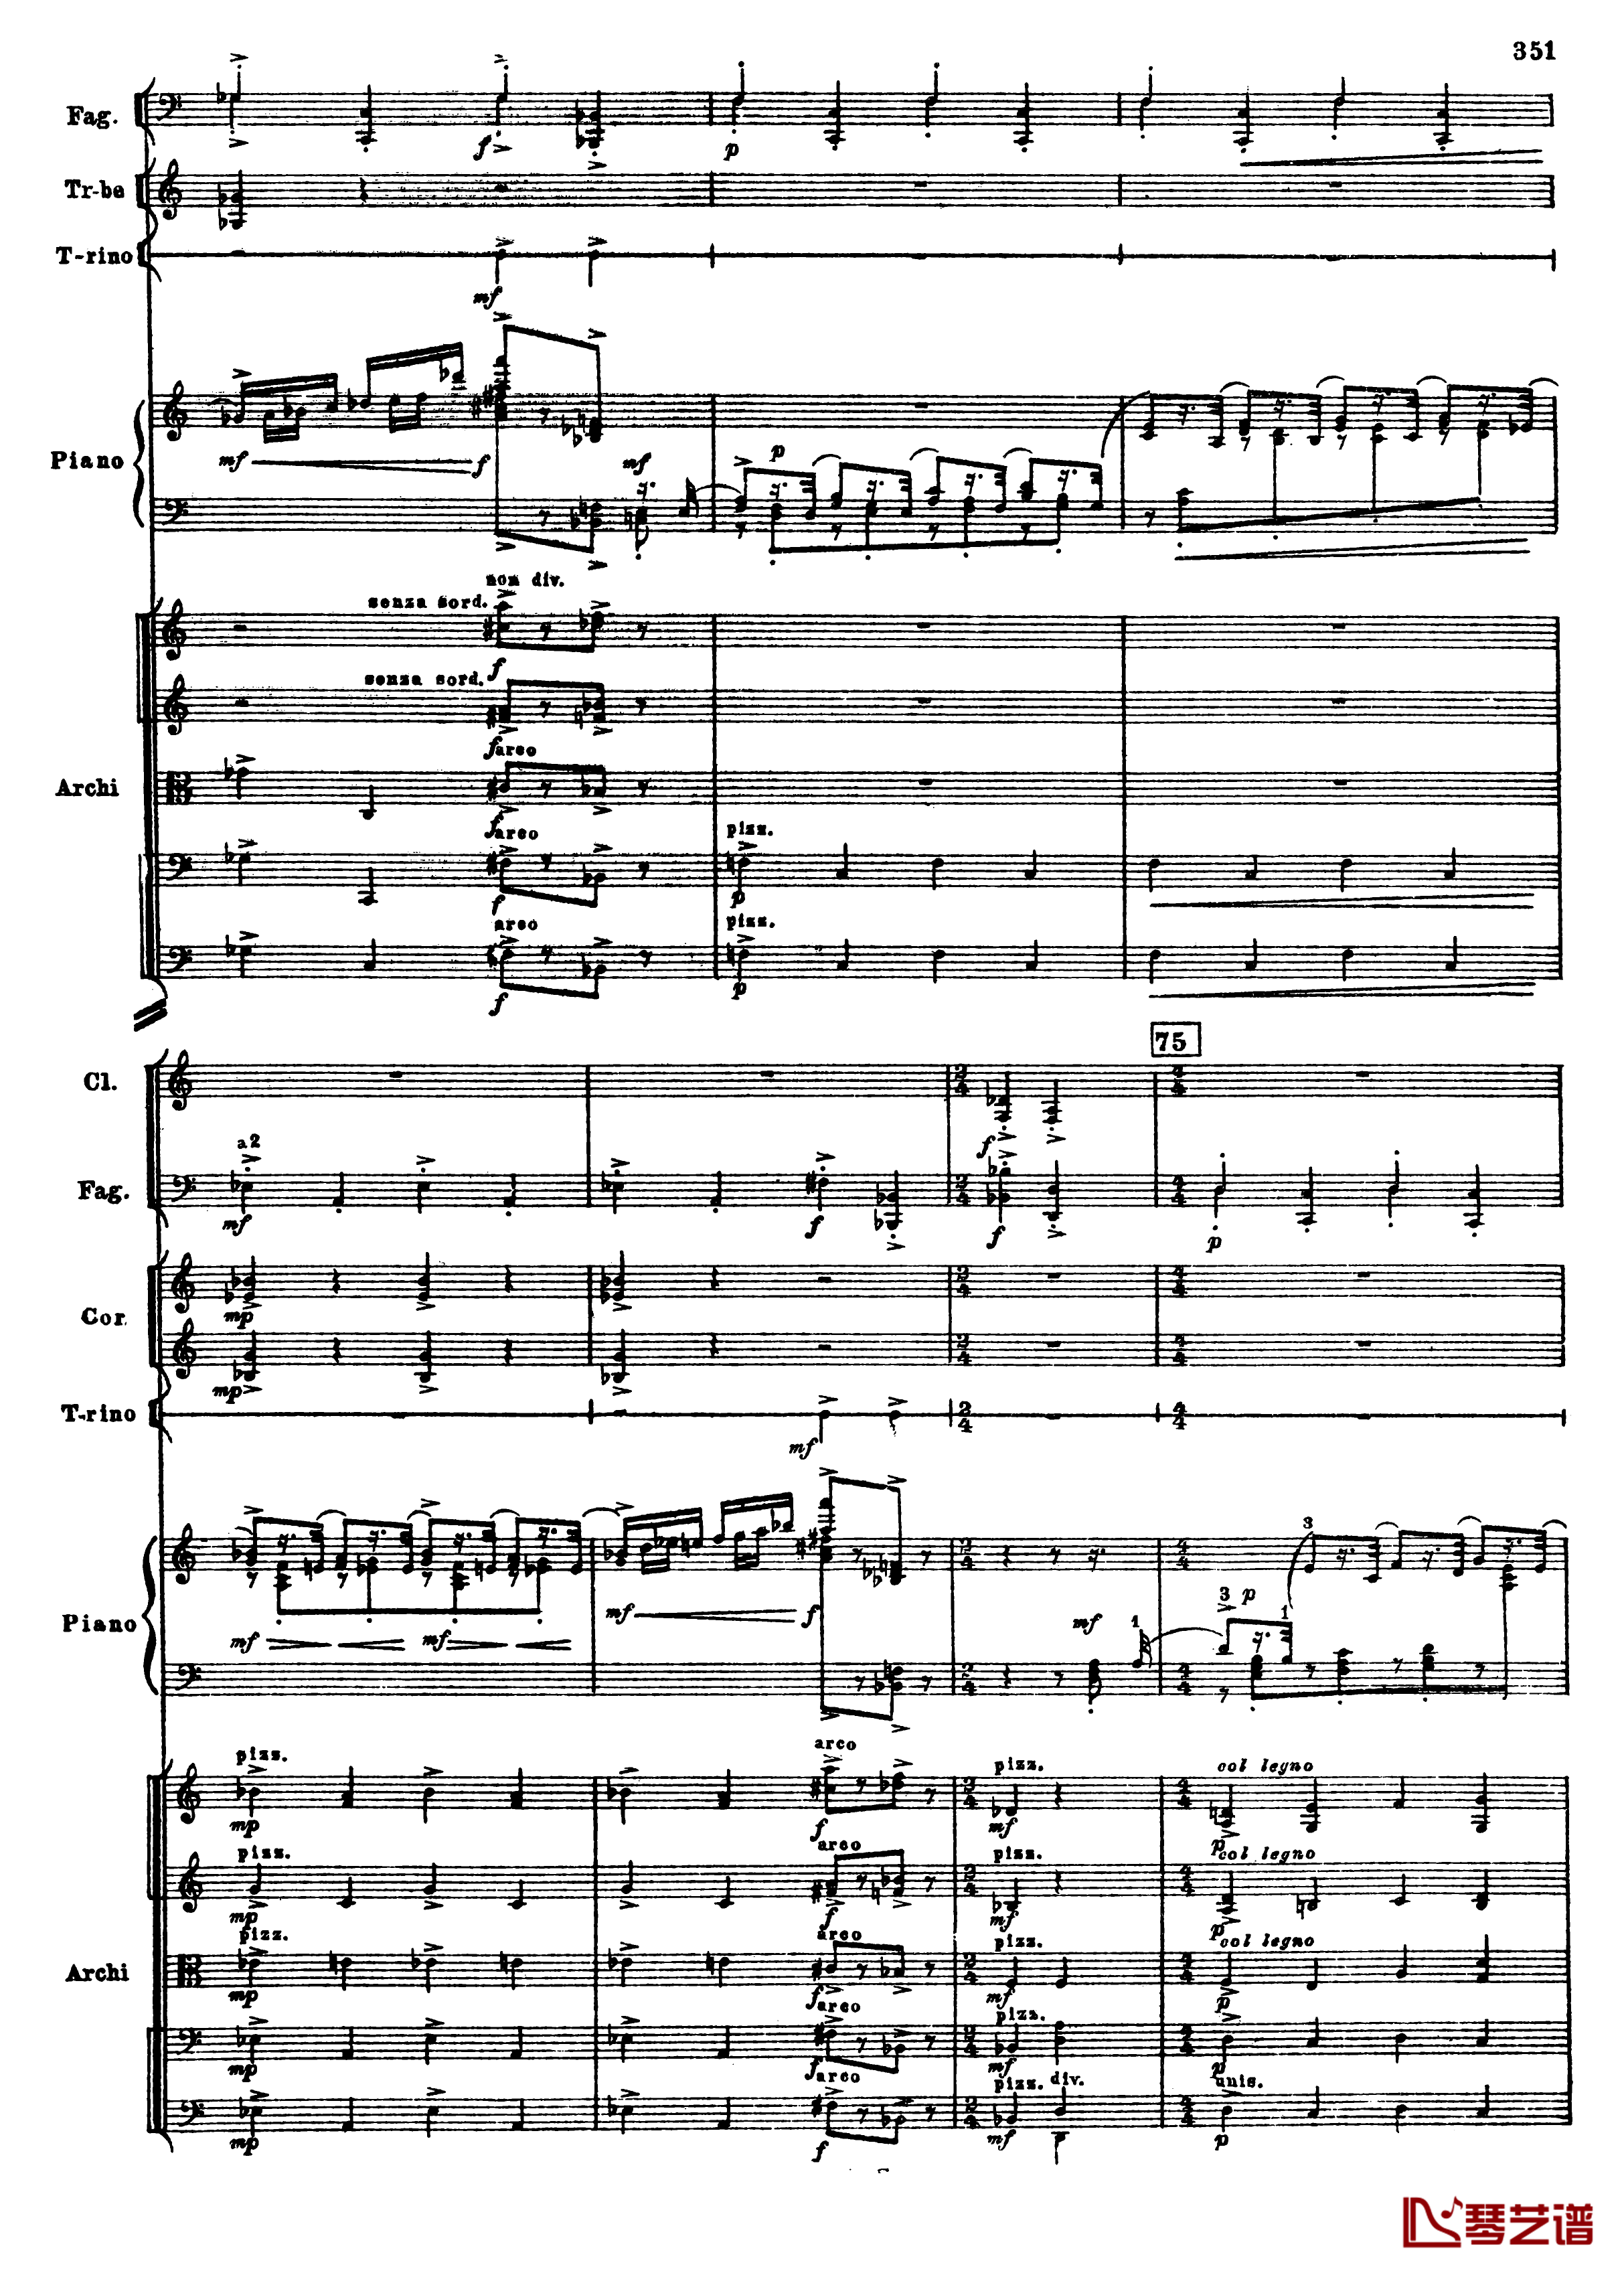 普罗科菲耶夫第三钢琴协奏曲钢琴谱-总谱-普罗科非耶夫83